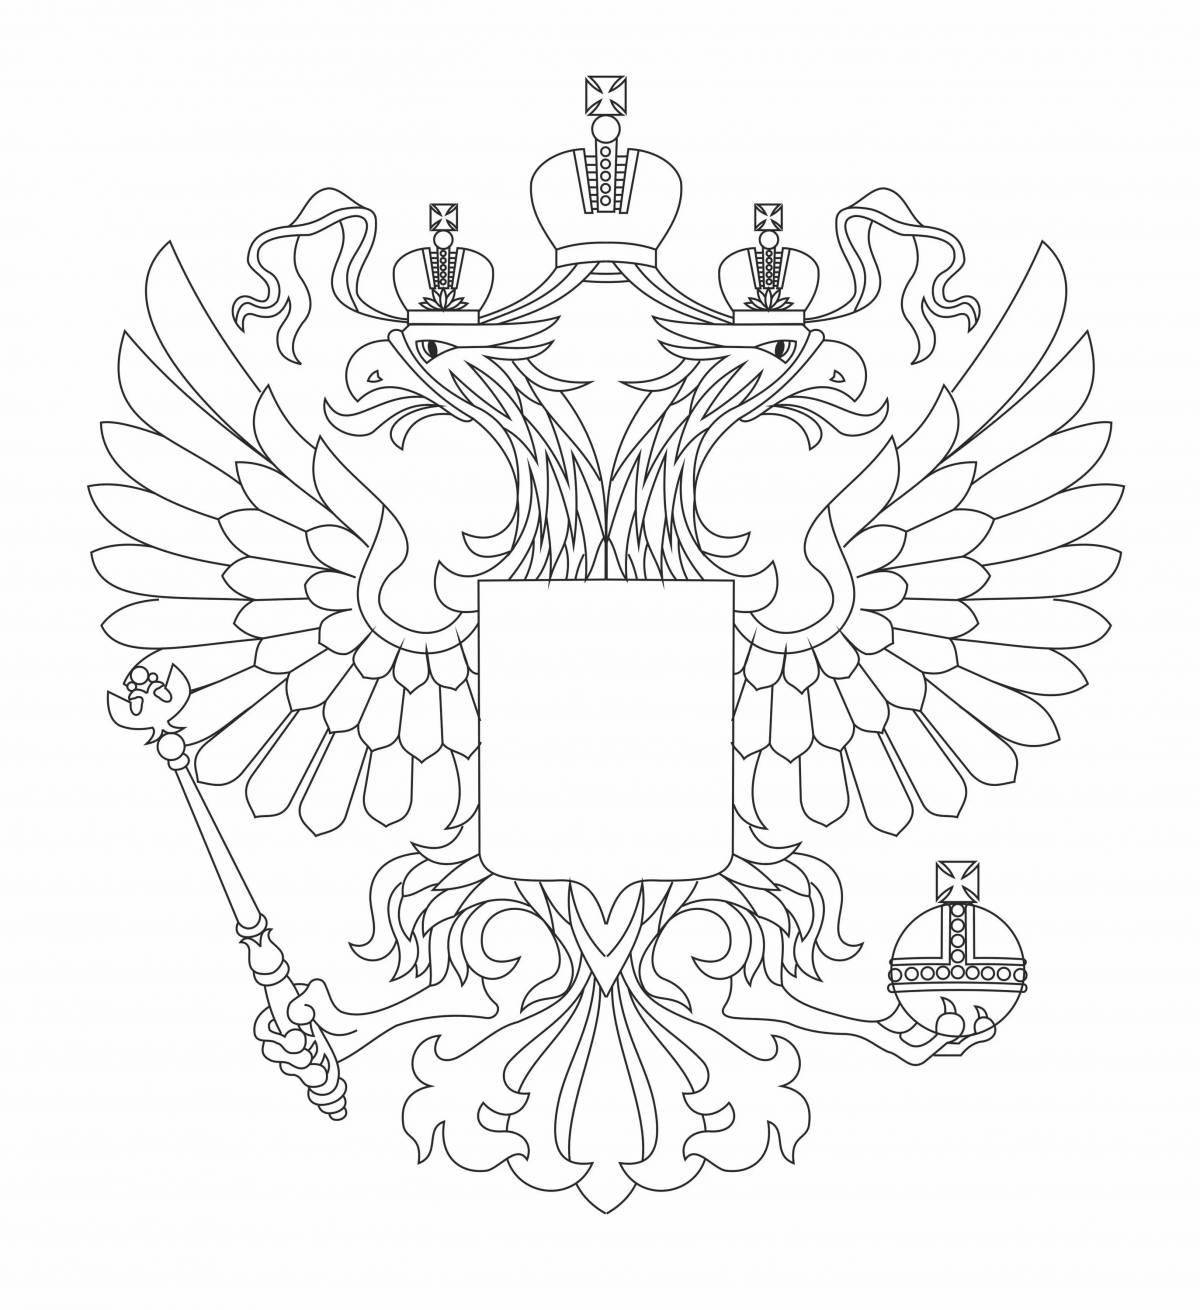 Большой флаг российской федерации